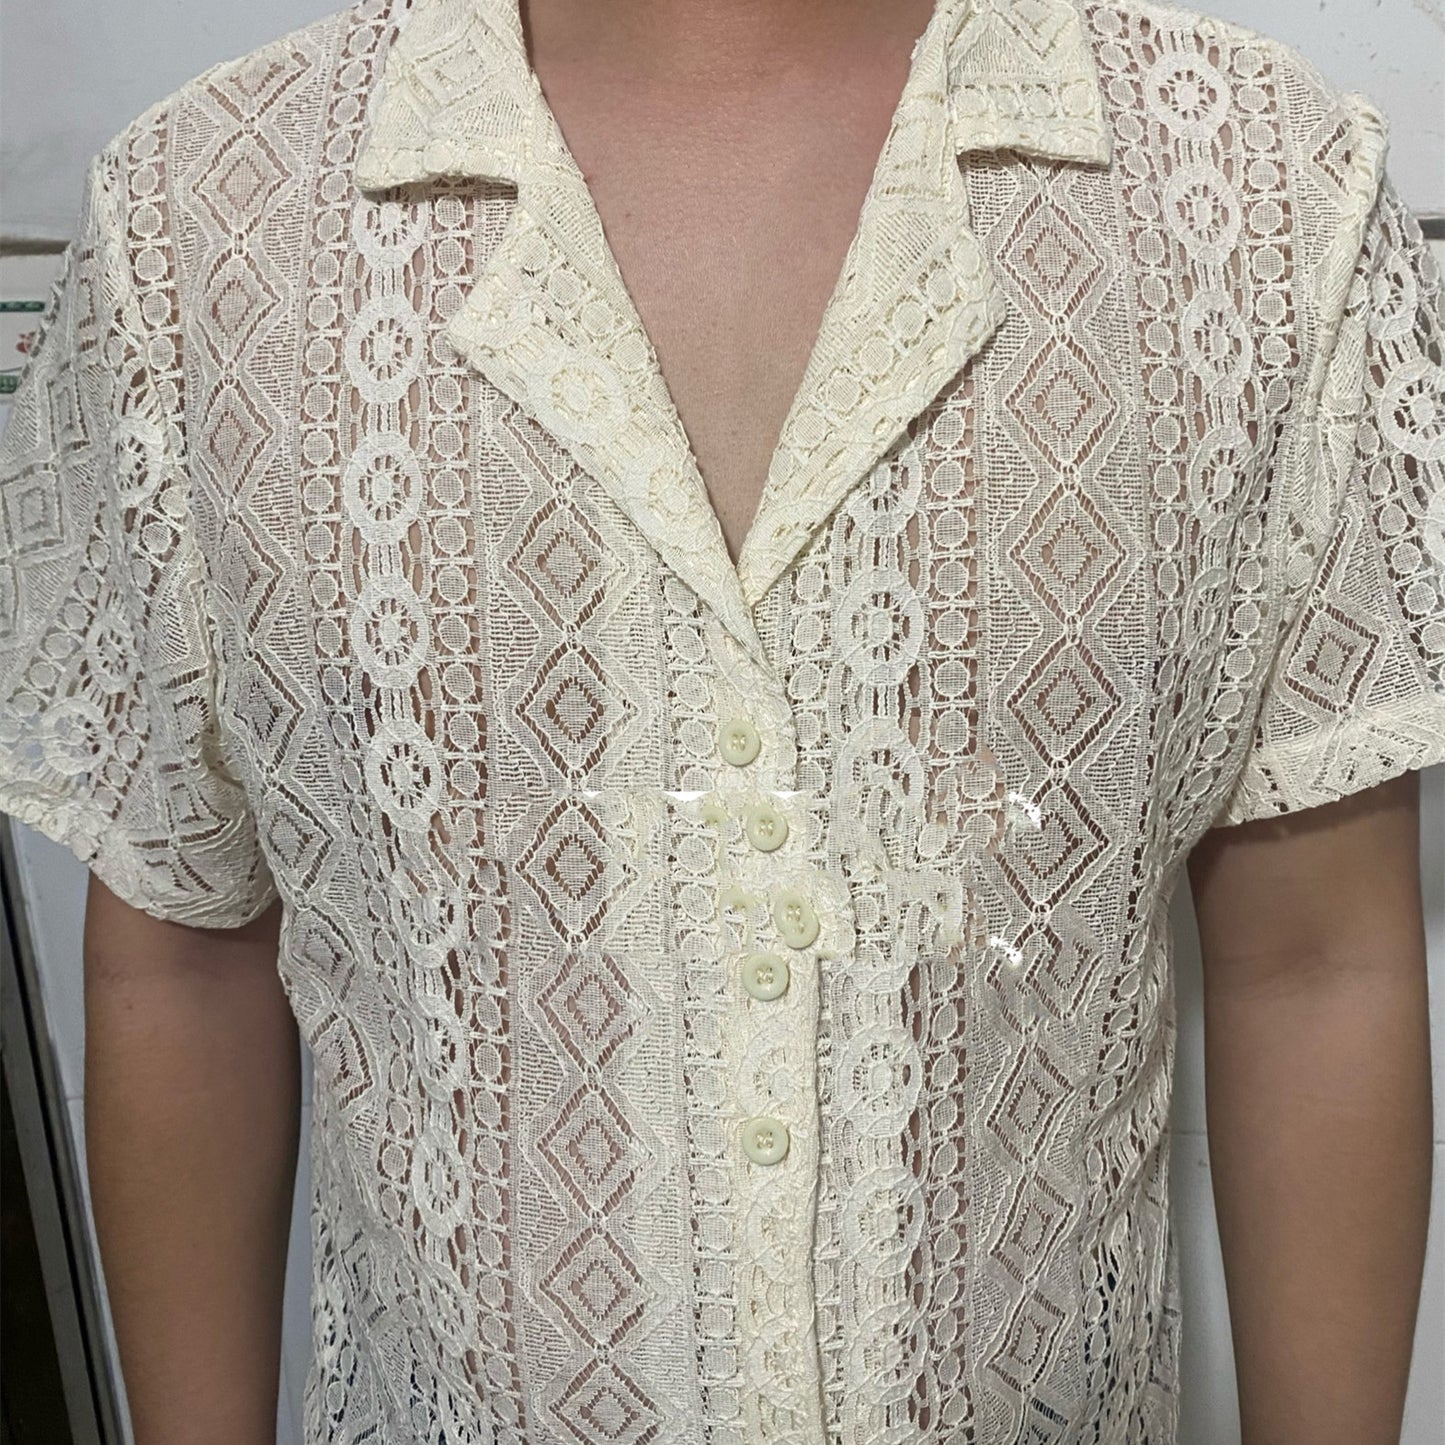 Men's Lace Shirt